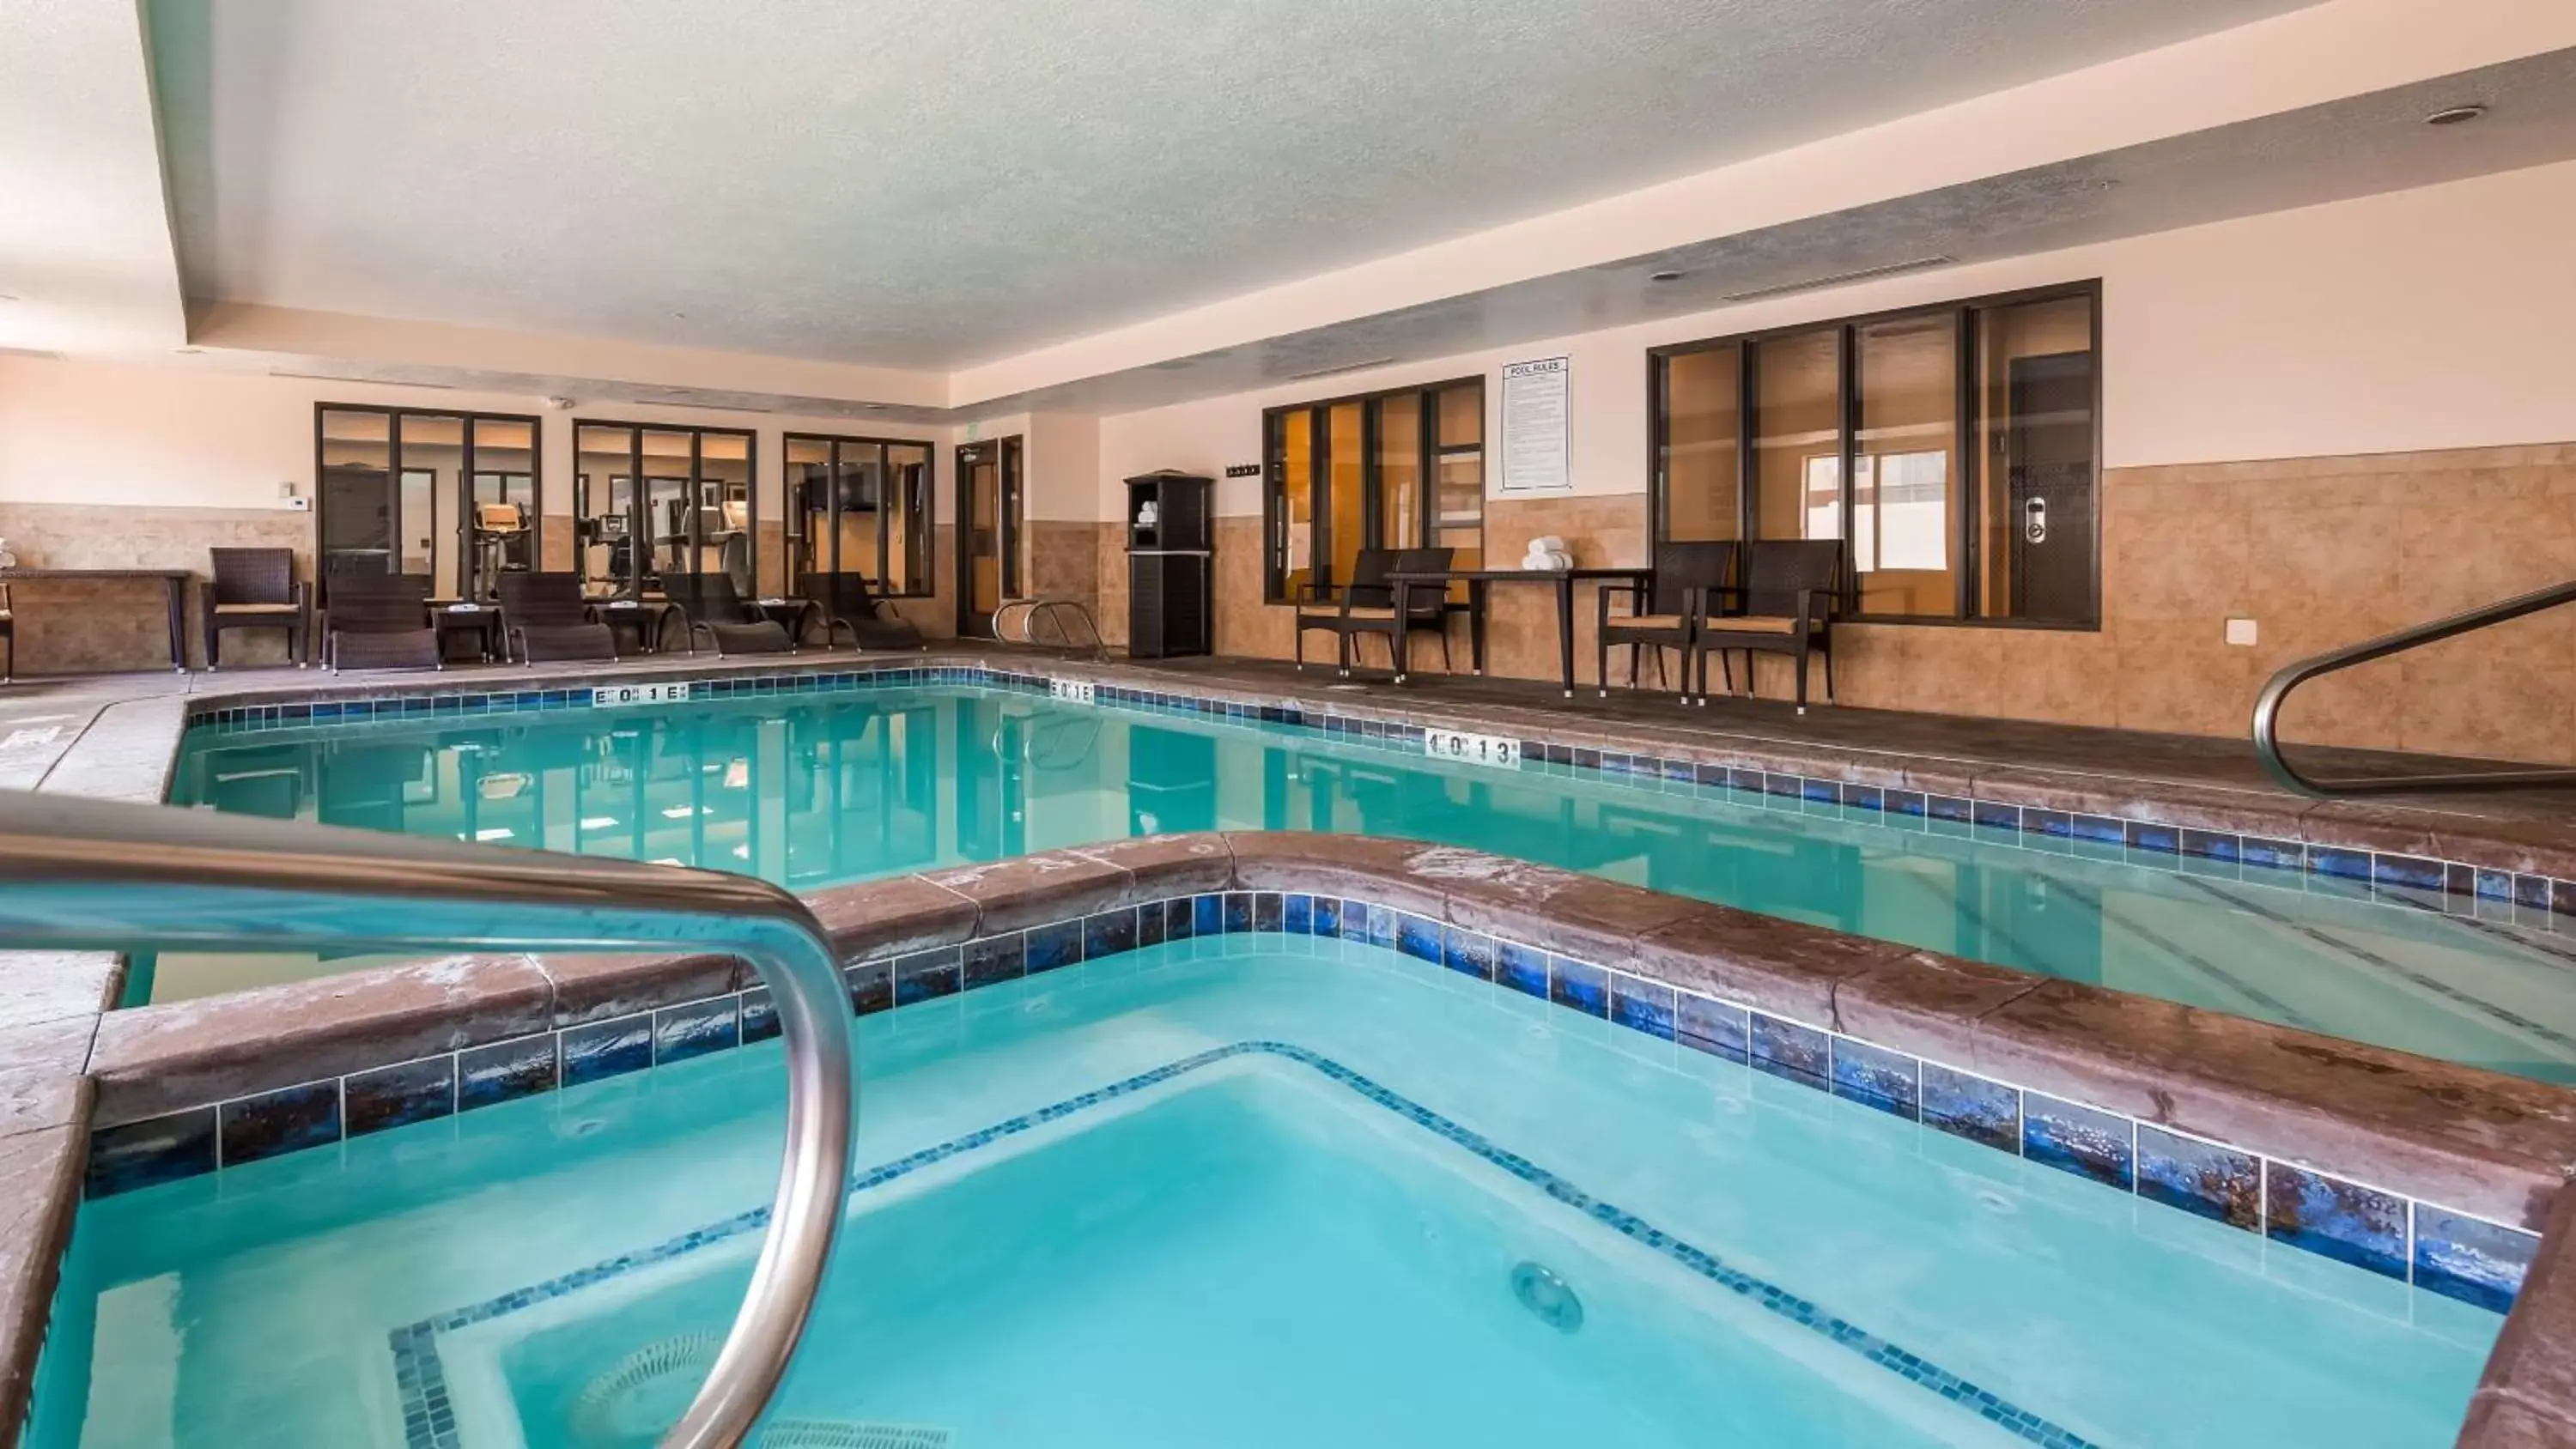 On site, Swimming Pool in Best Western Plus Airport Inn & Suites